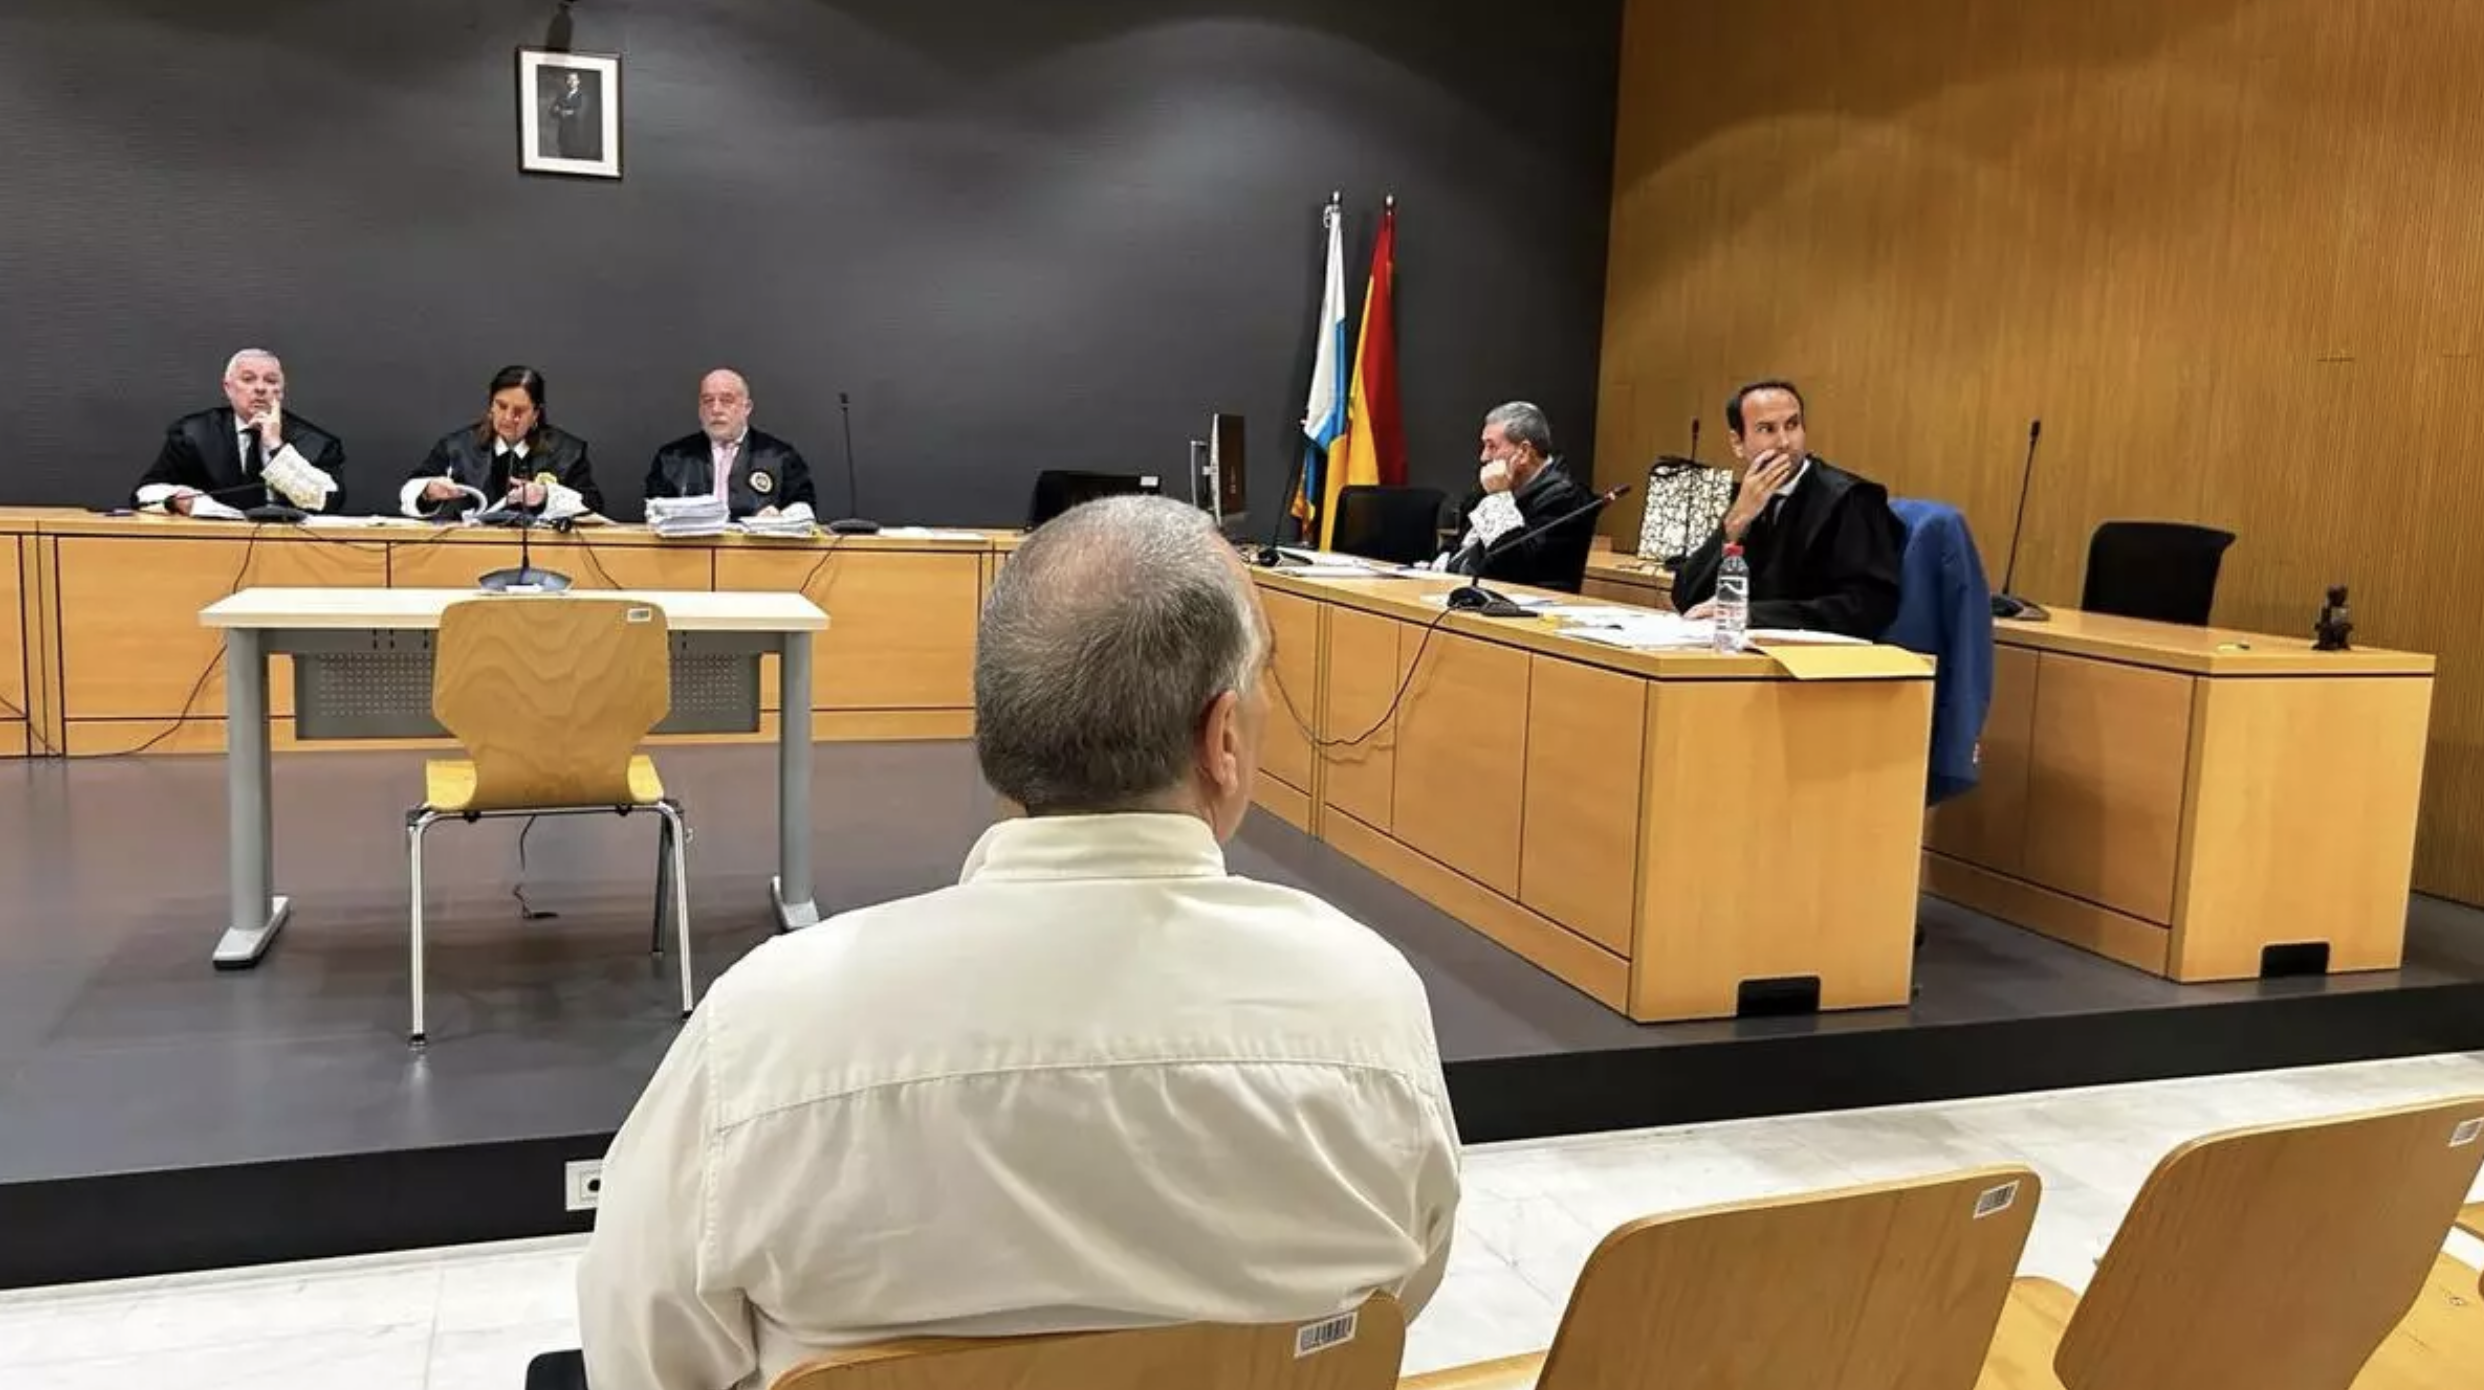 Momento del juicio en la Audiencia Provincial del dentista de Lanzarote, L. M. D., que ha salido absuelto. / LP/DLP